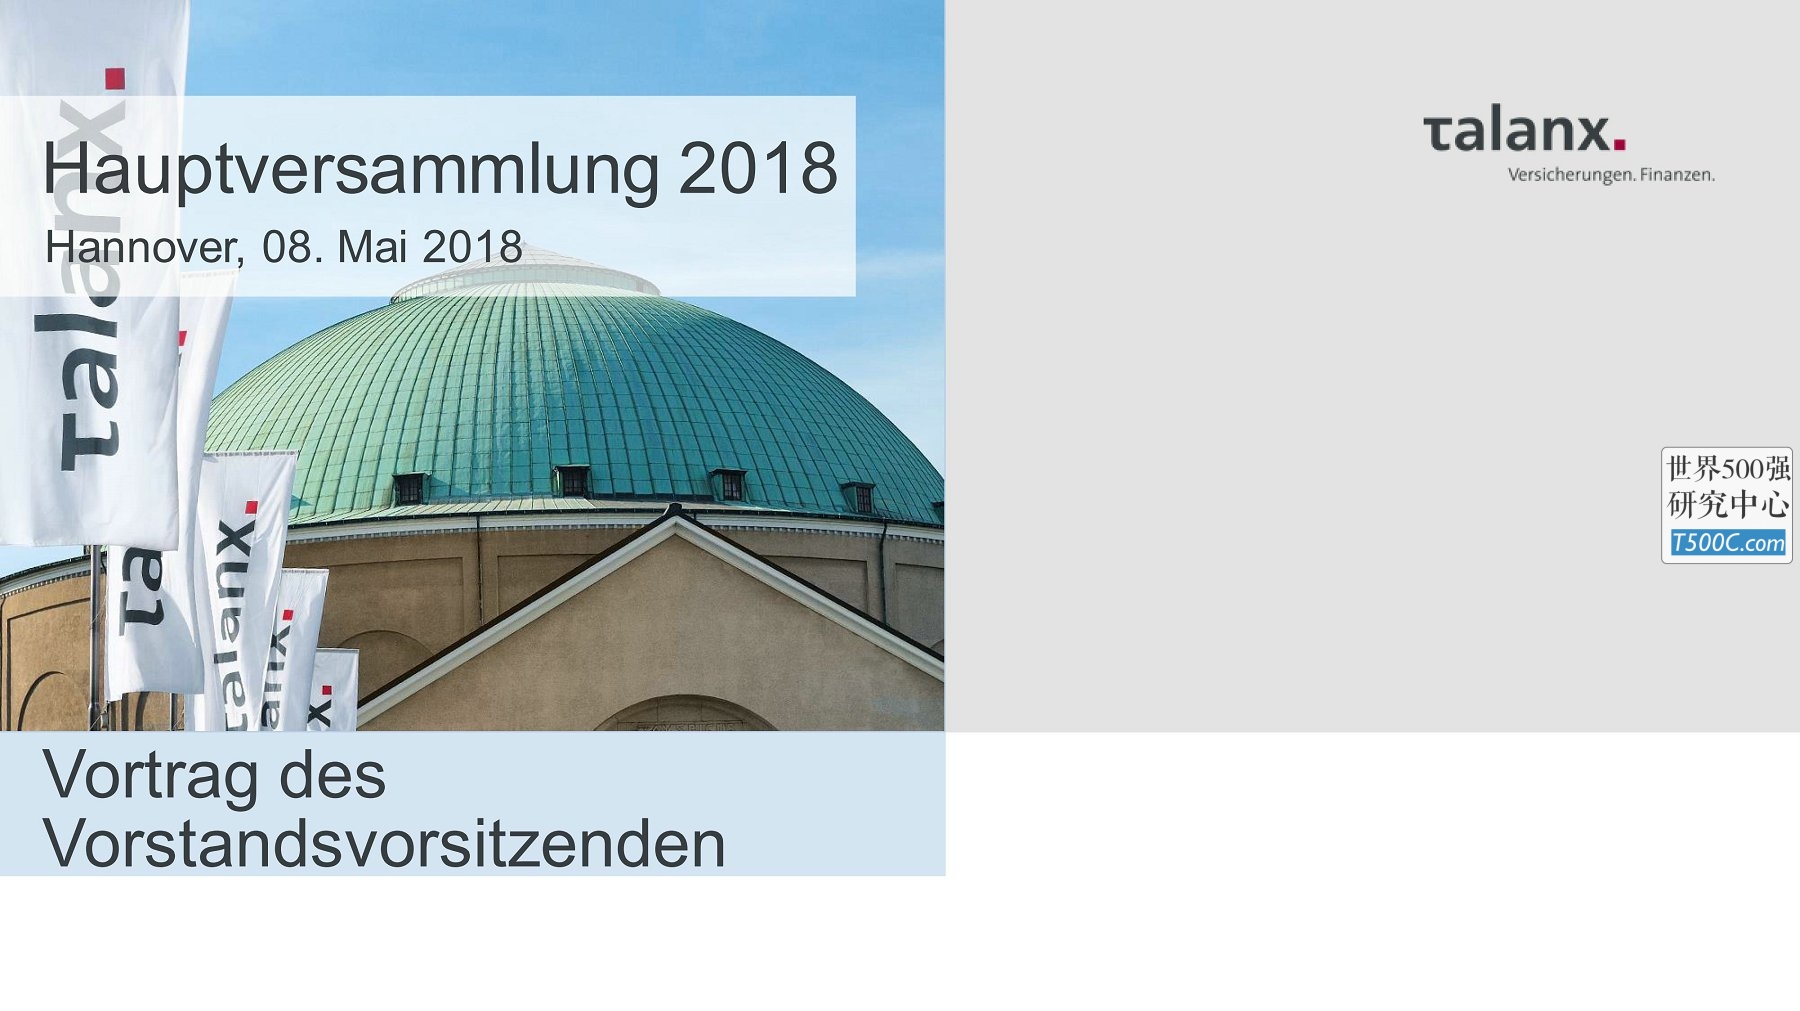 德国Talanx保险_PPT样式_2018_T500C.com_Internet.pdf